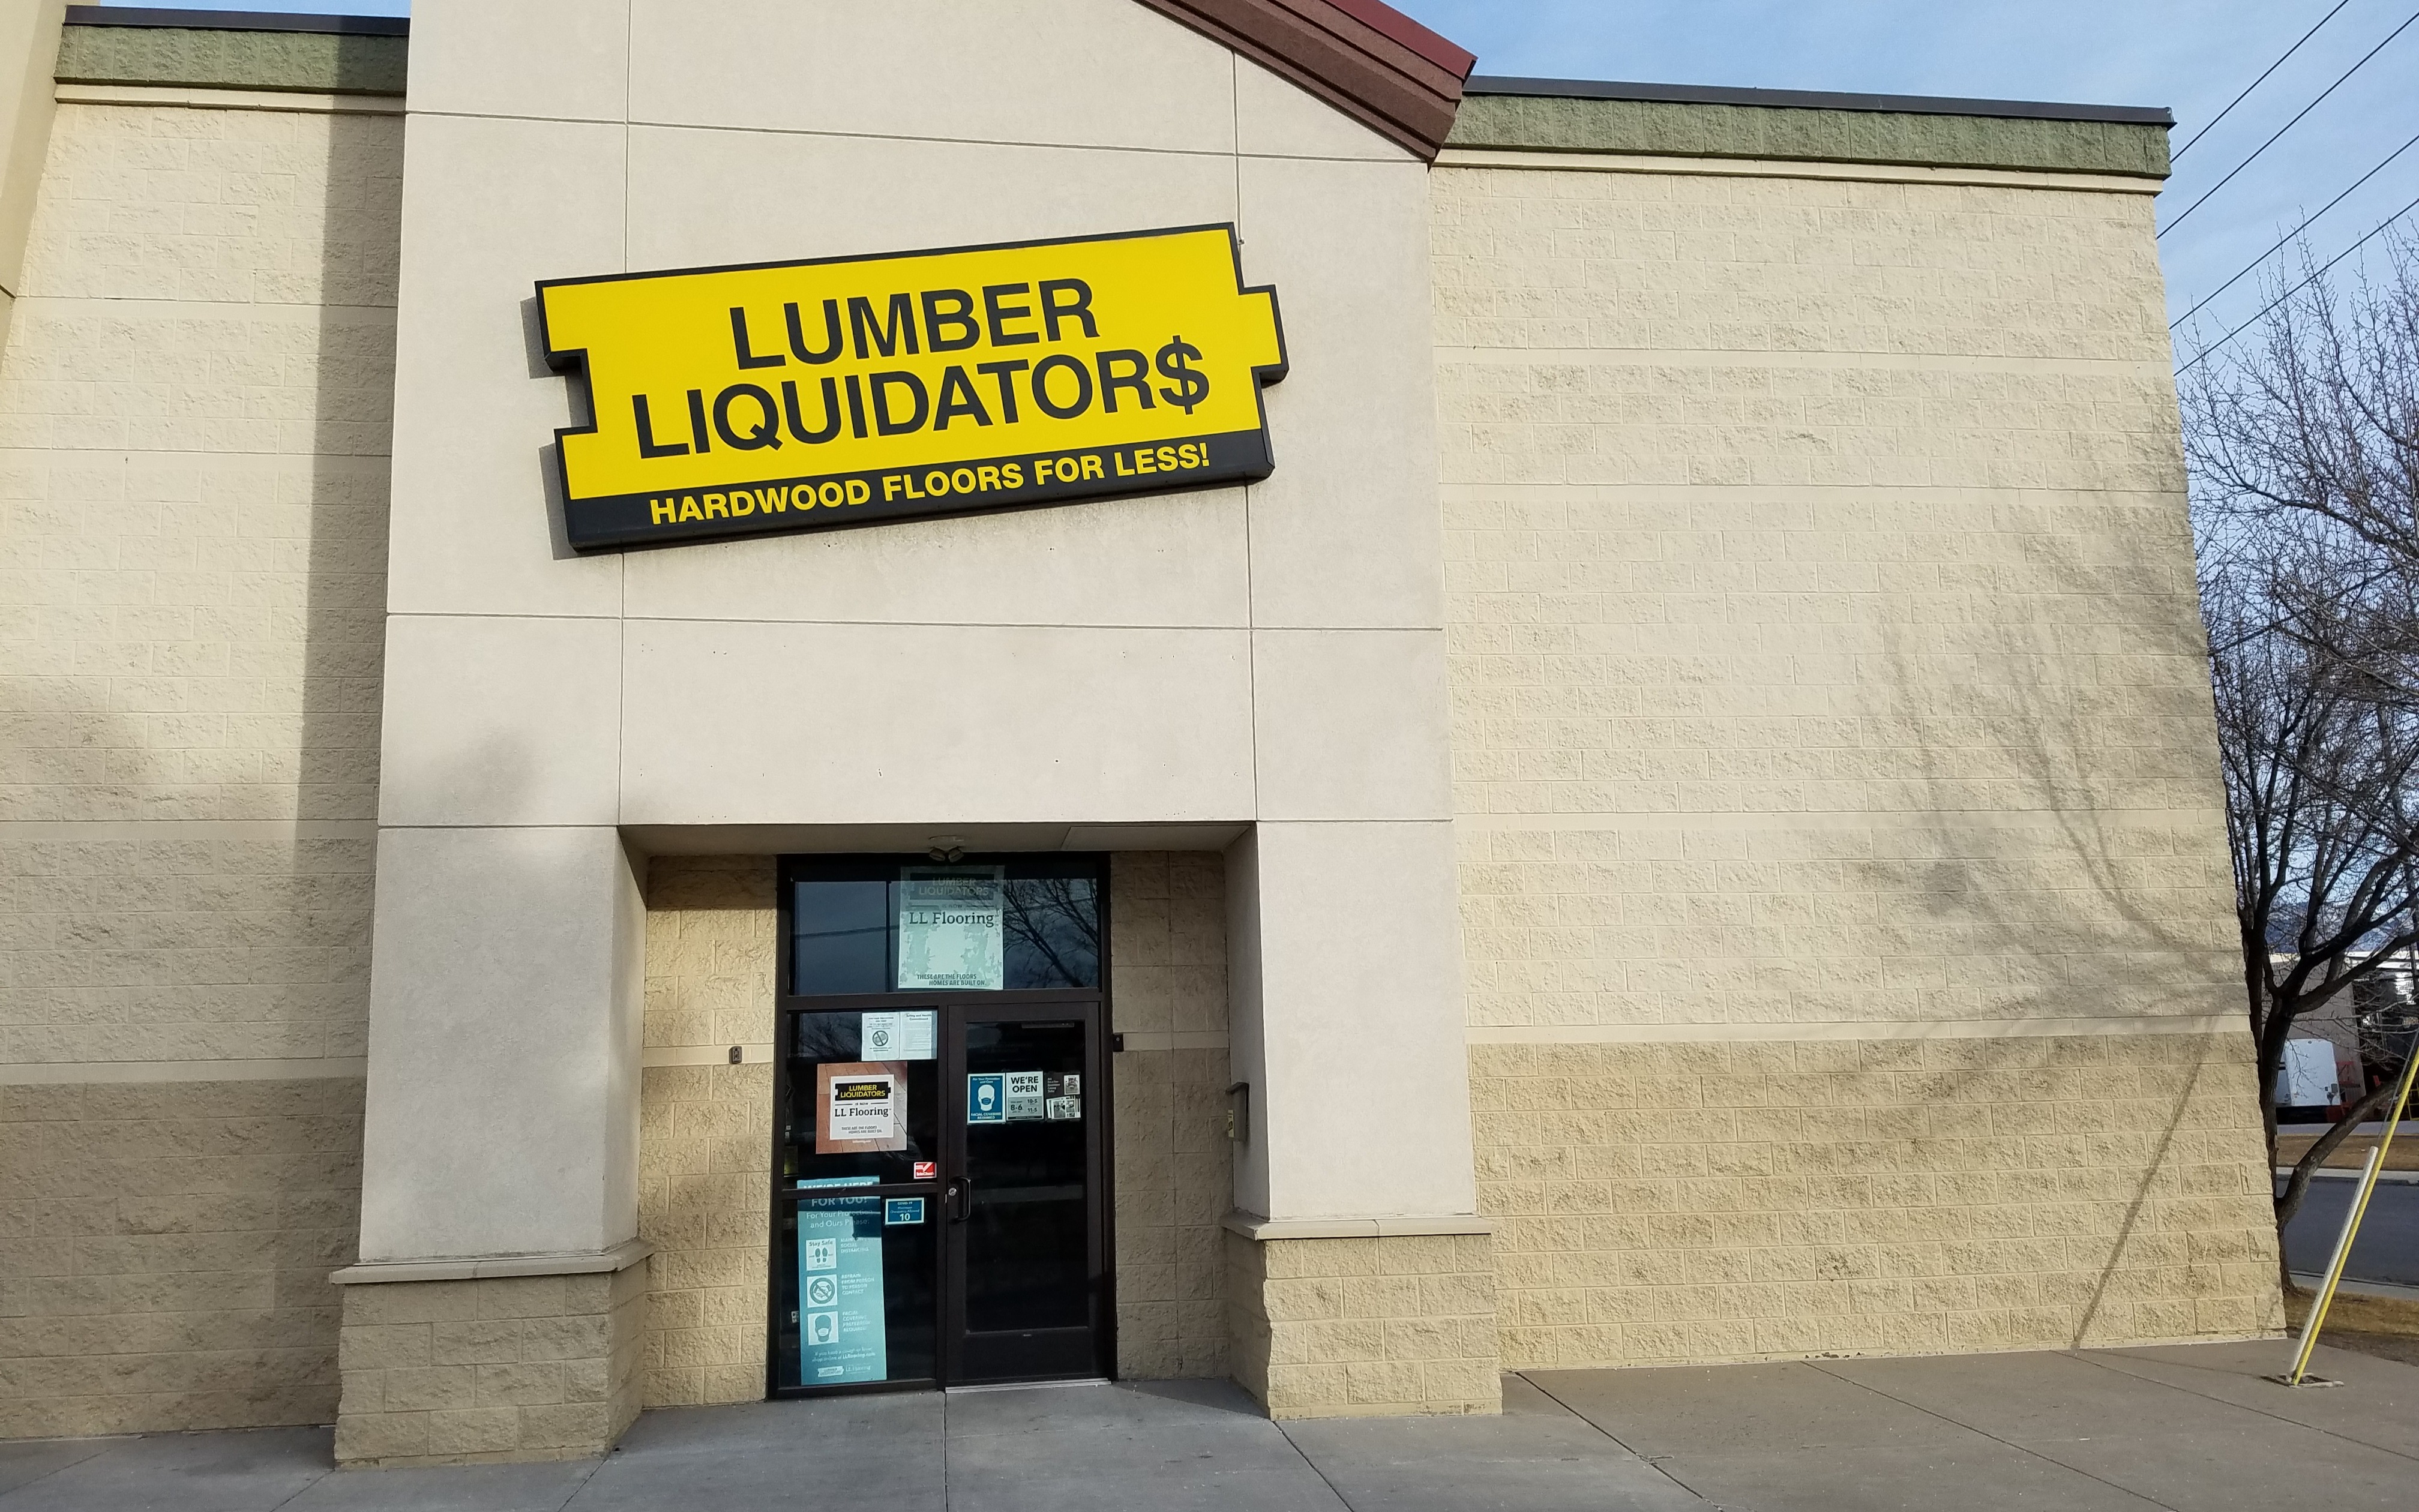 Ll Flooring Lumber Liquidators 1044, Hardwood Flooring Slc